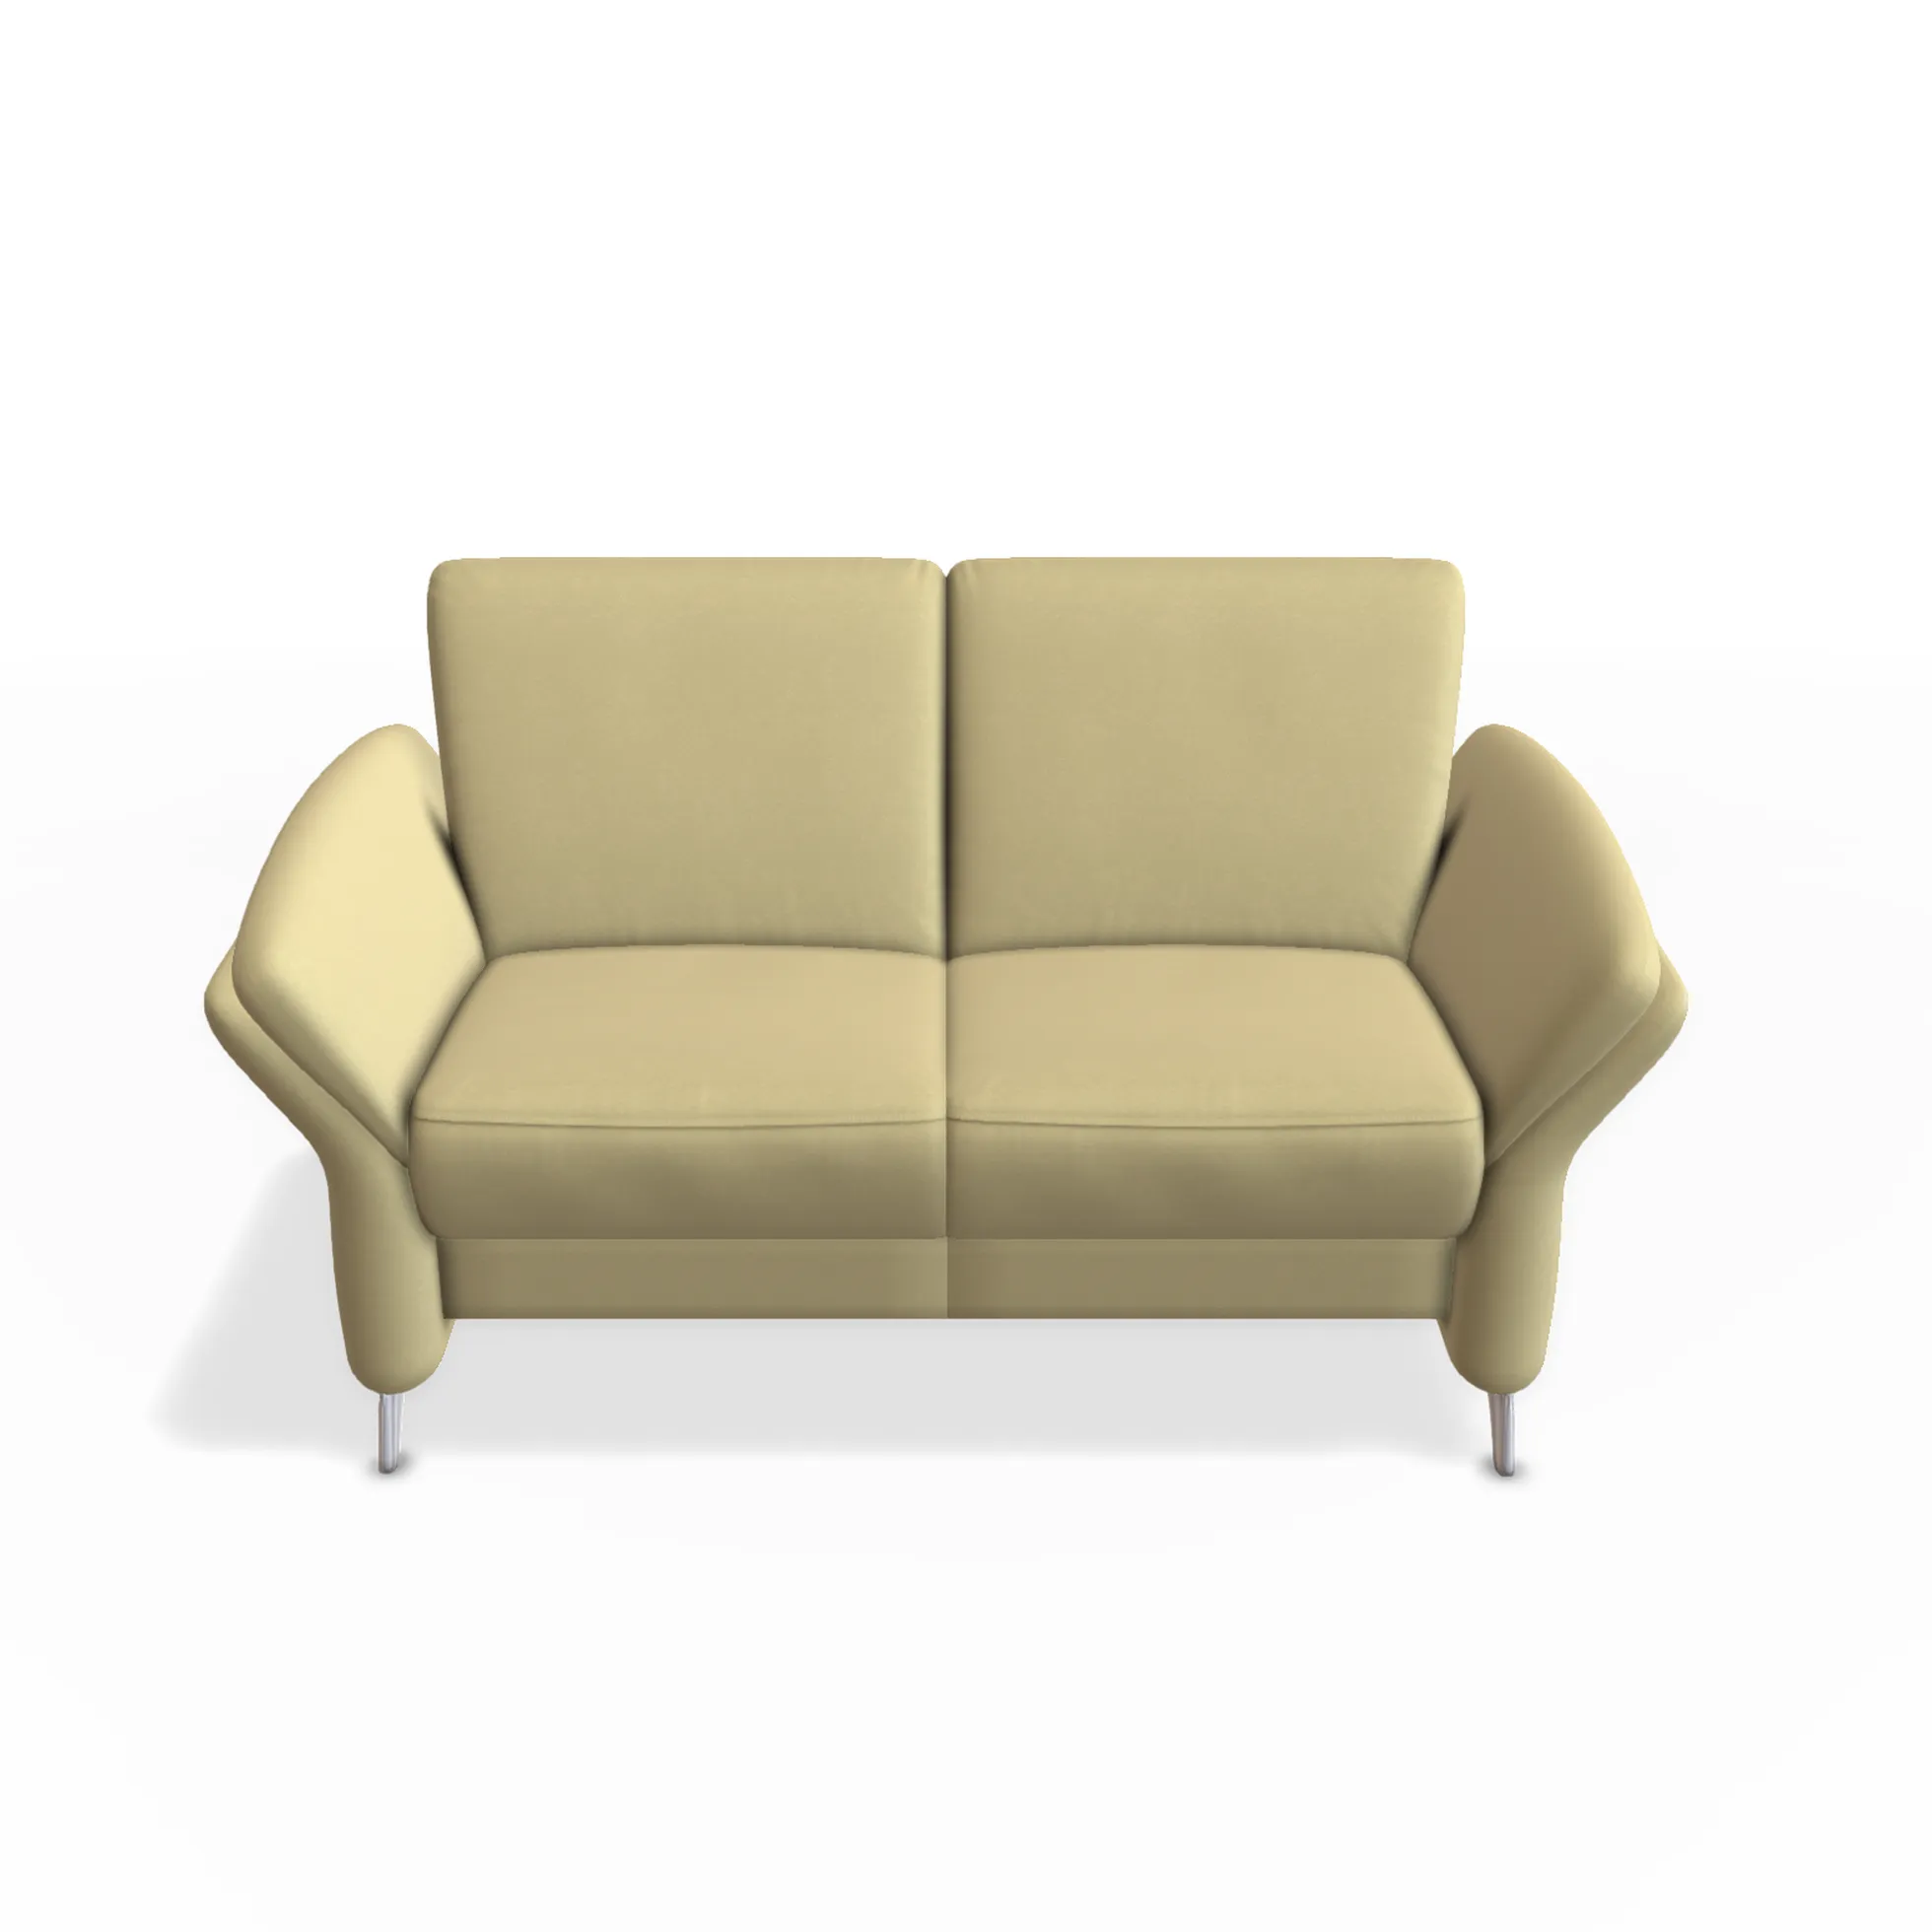 2- sitzer sofa noah mit 2 armlehnen in goldgelben webstoff